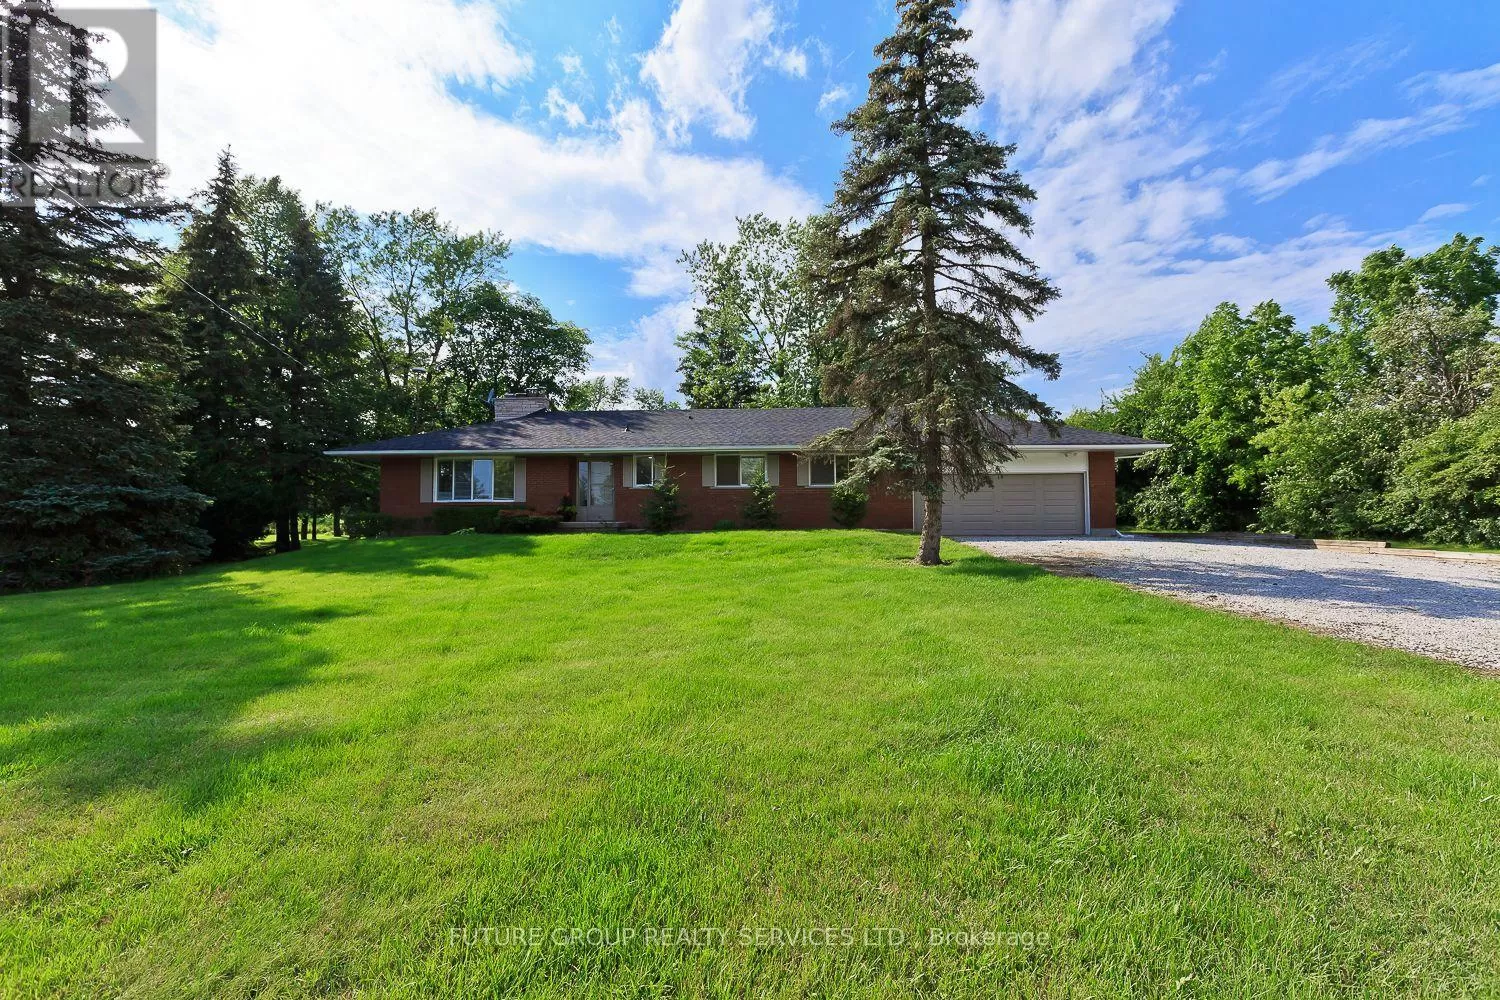 House for rent: Bsmt - 1065 Burnhamthorpe Road W, Oakville, Ontario L6M 4K9